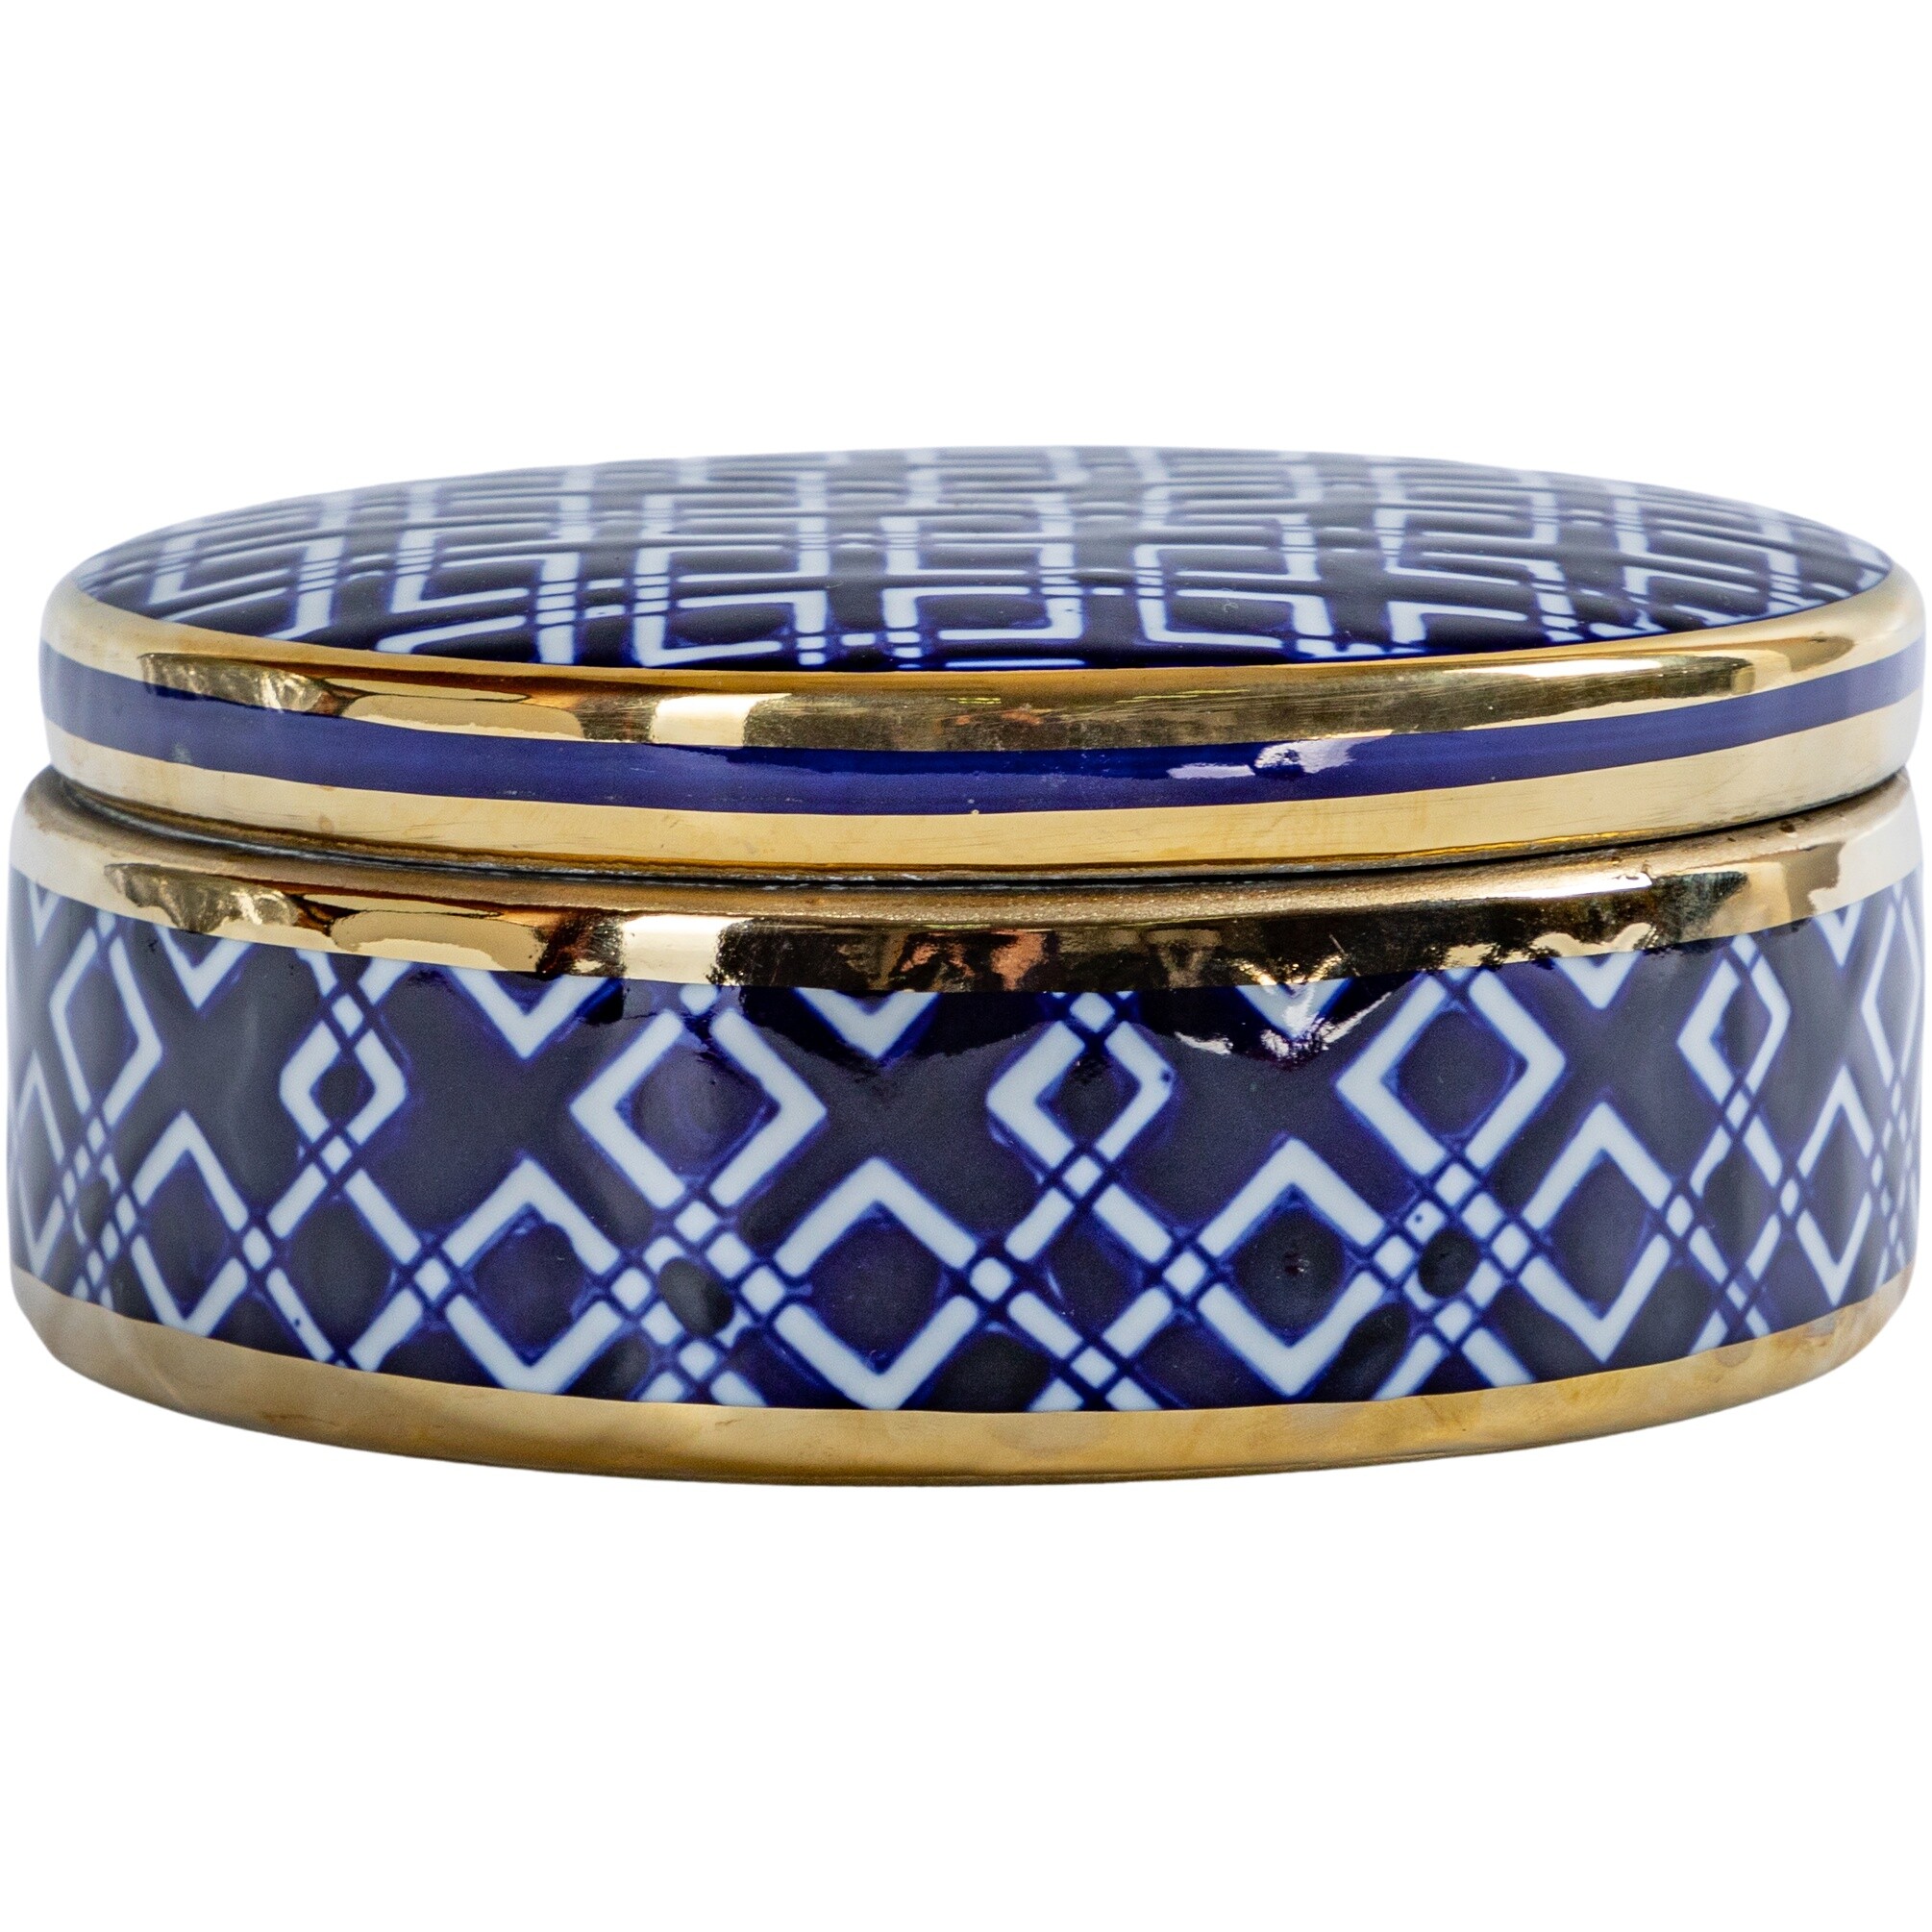 Шкатулка керамическая круглая 17 см синяя 58-061